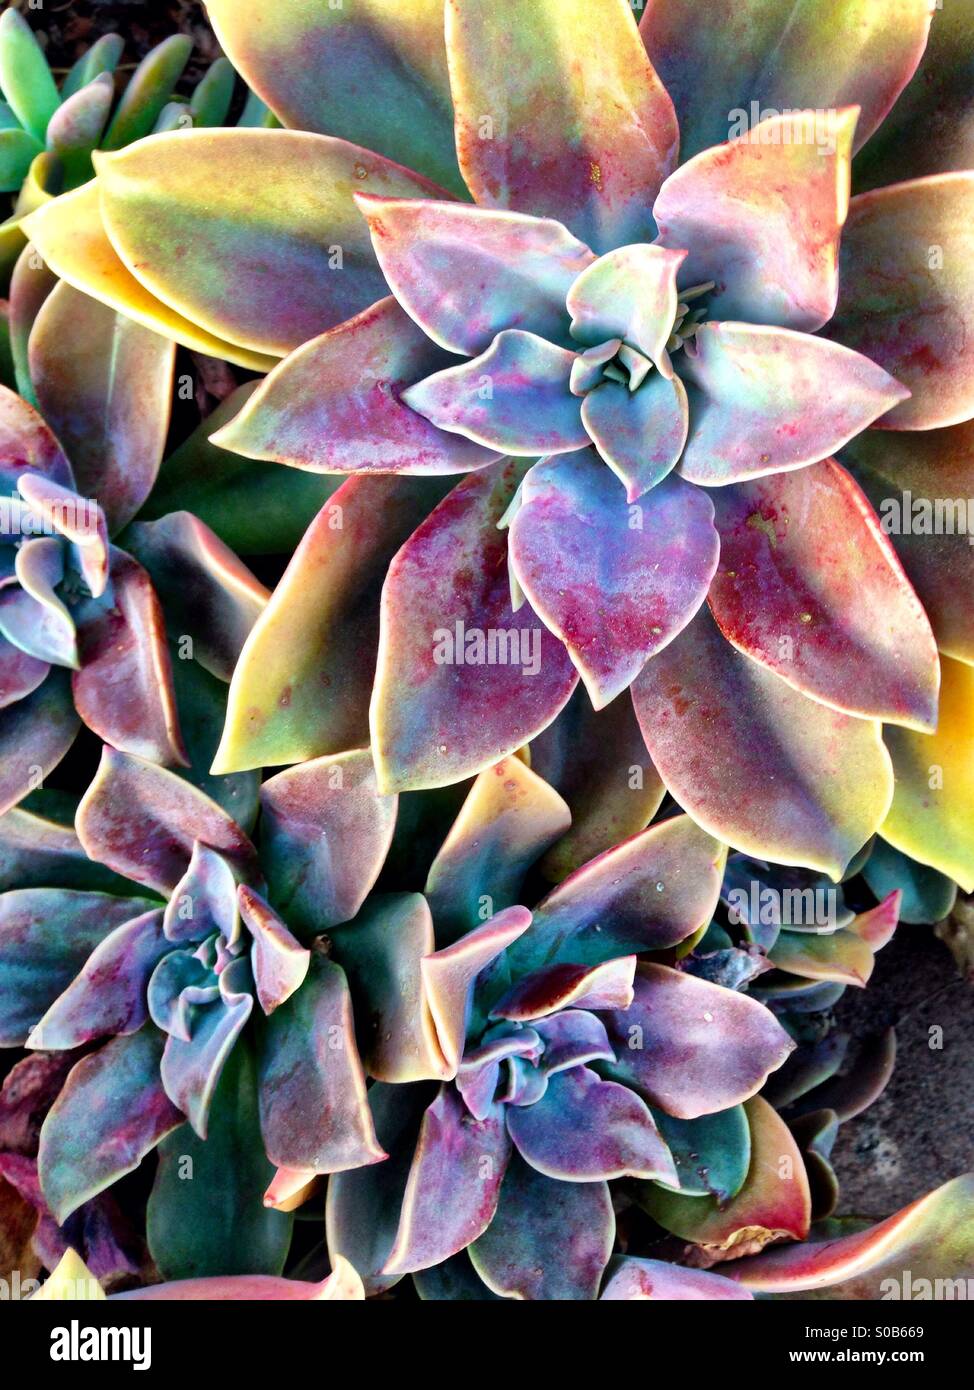 Colorful succulent plants Stock Photo